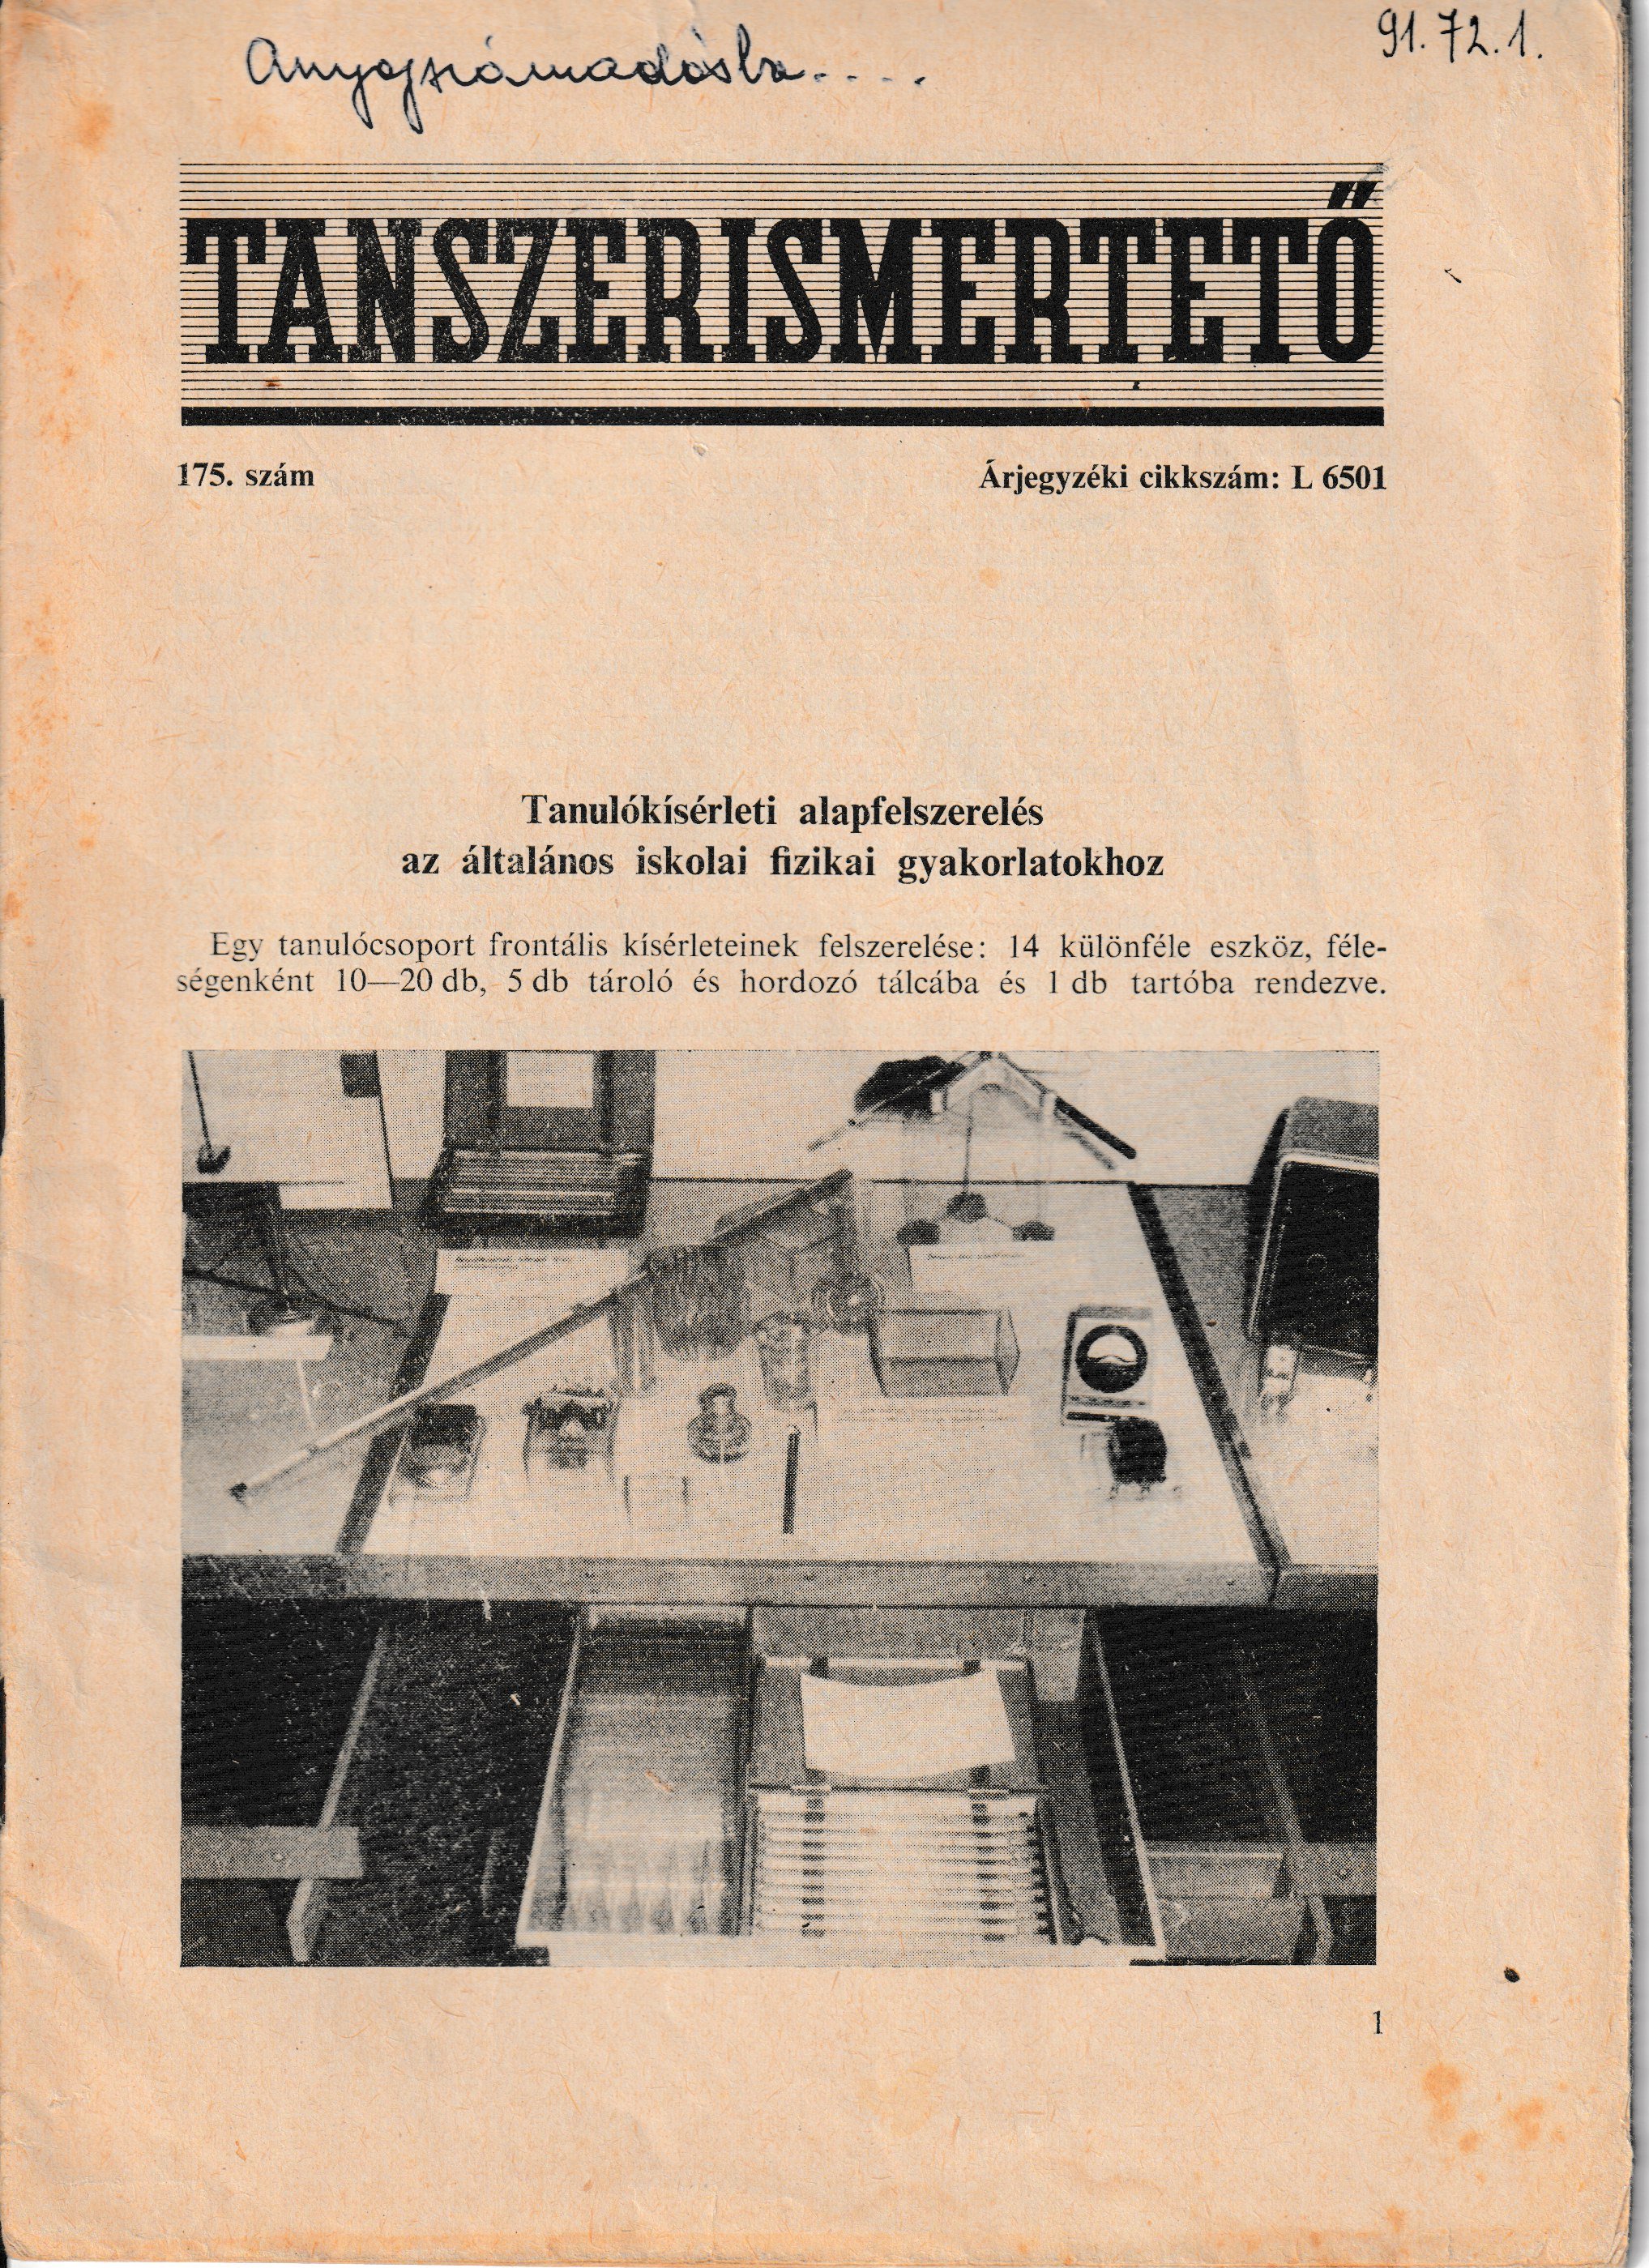 Fizikai kísérleti felszerelés tanszer-ismertetője (Tapolcai Városi Múzeum CC BY-NC-SA)